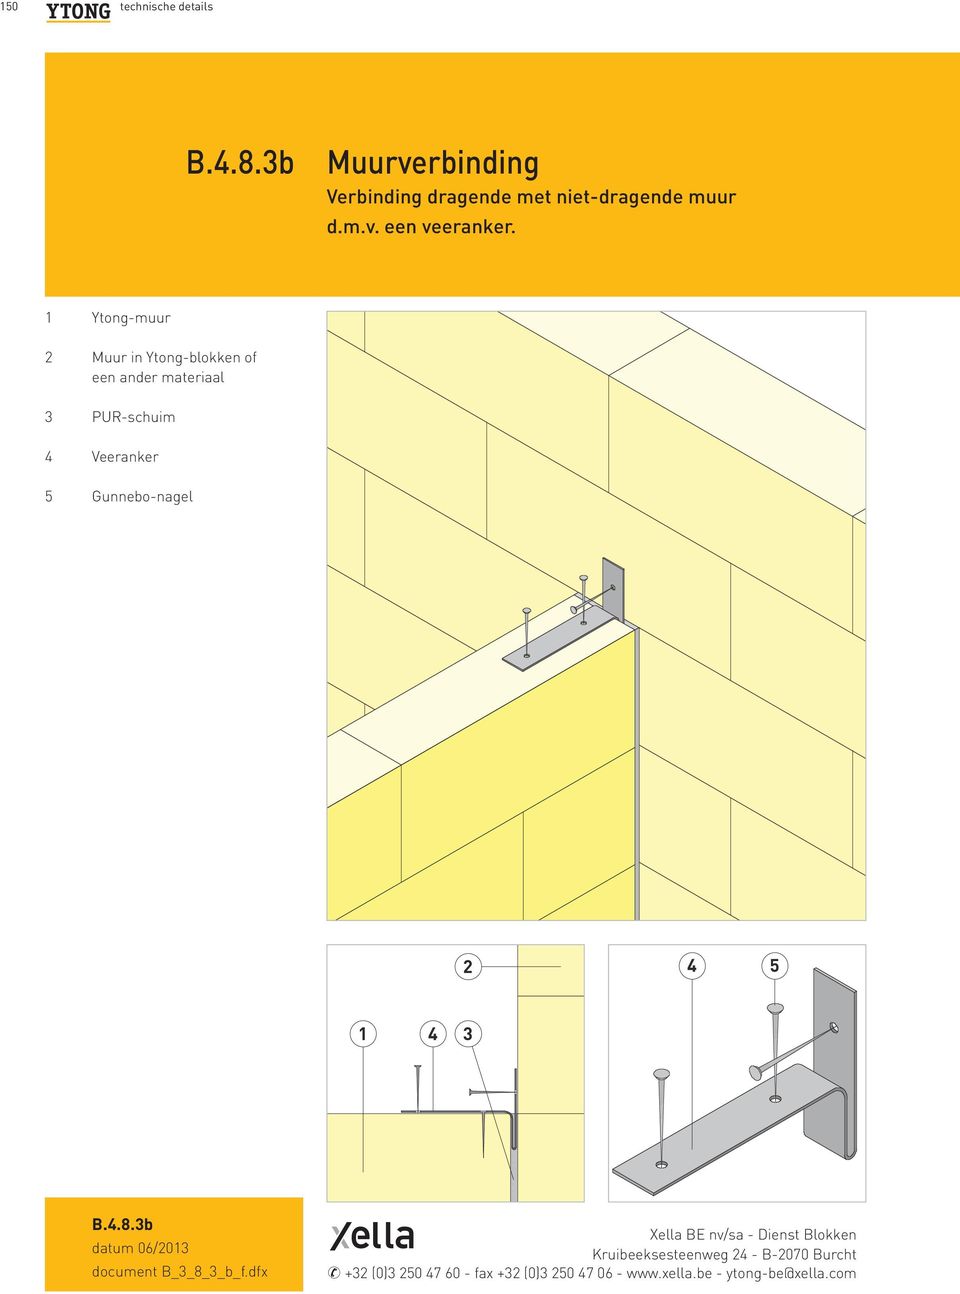 b4 technische details pdf free download